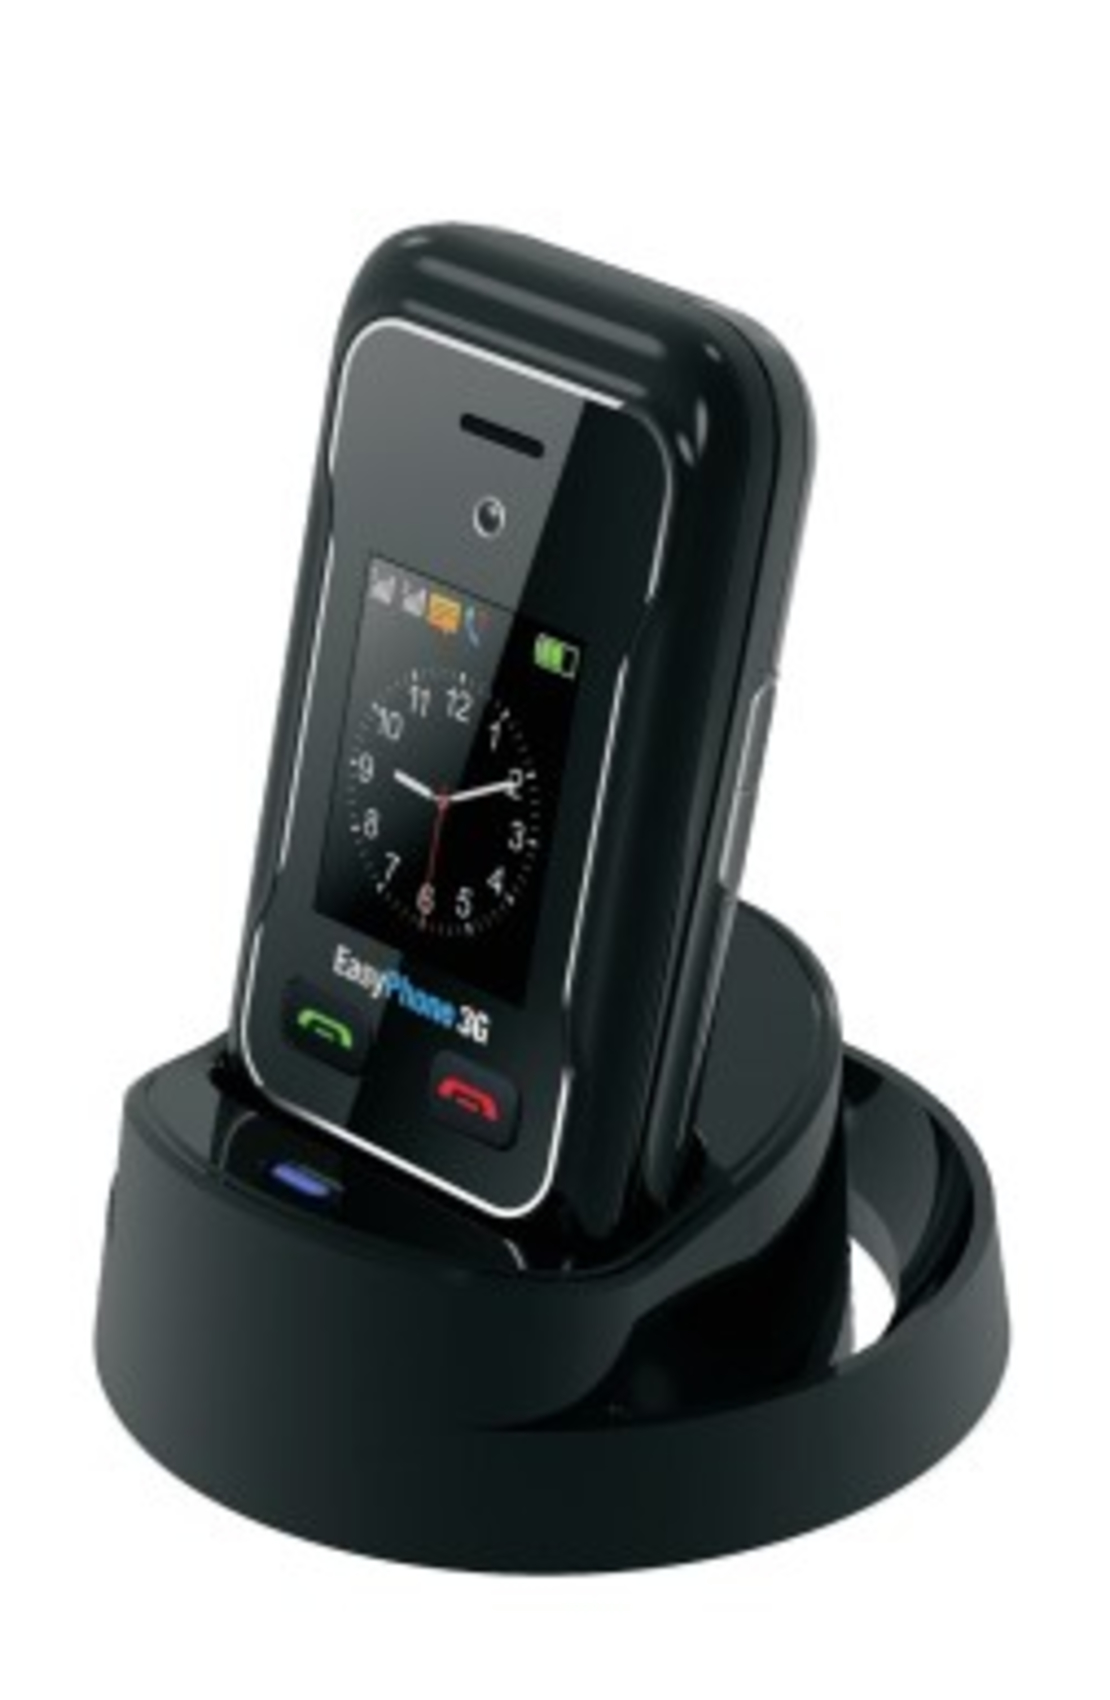 טלפון סלולרי למבוגרים Easyphone Np-01 plus 4G